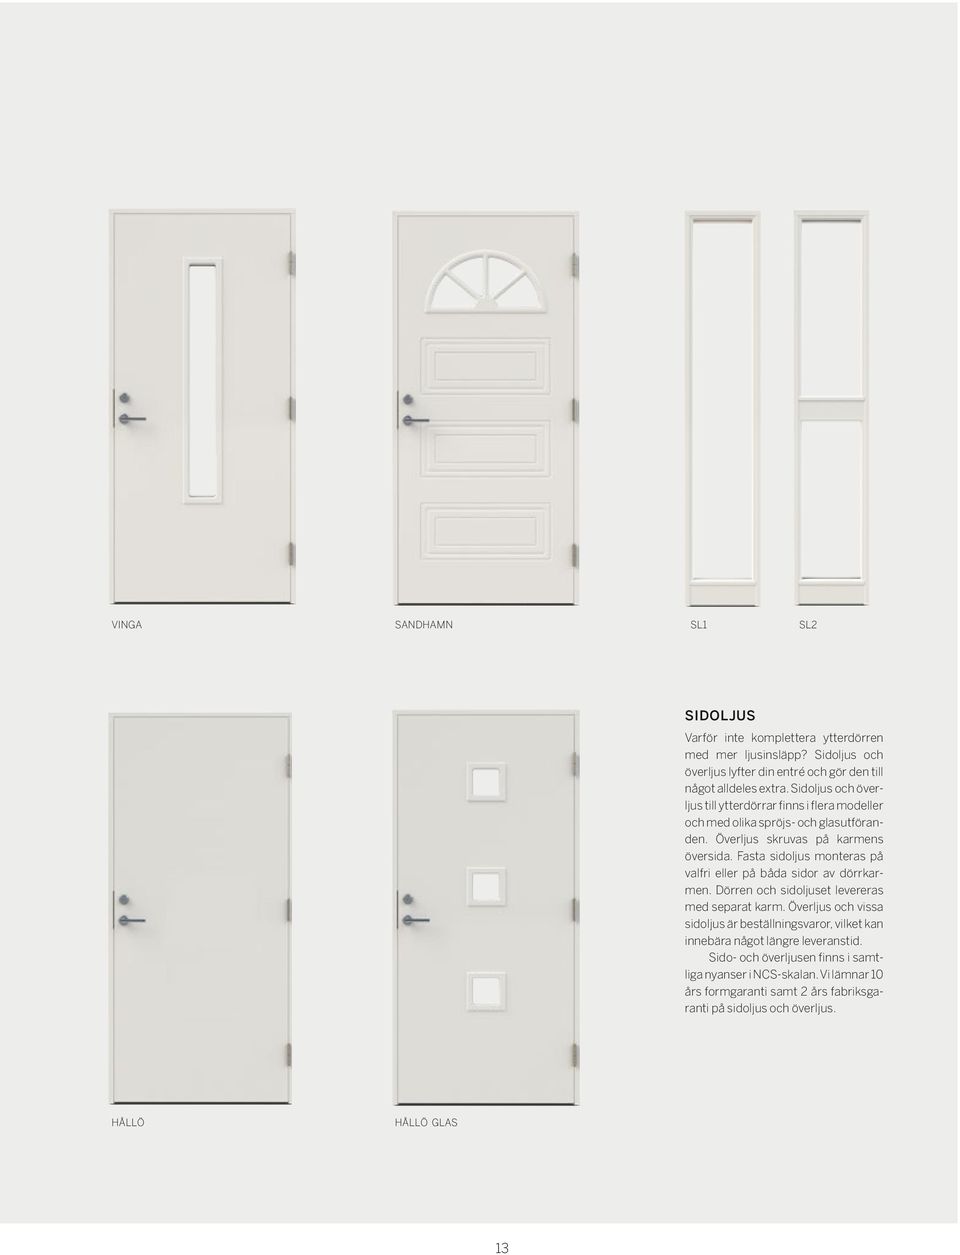 Fasta sidoljus monteras på valfri eller på båda sidor av dörrkarmen. Dörren och sidoljuset levereras med separat karm.